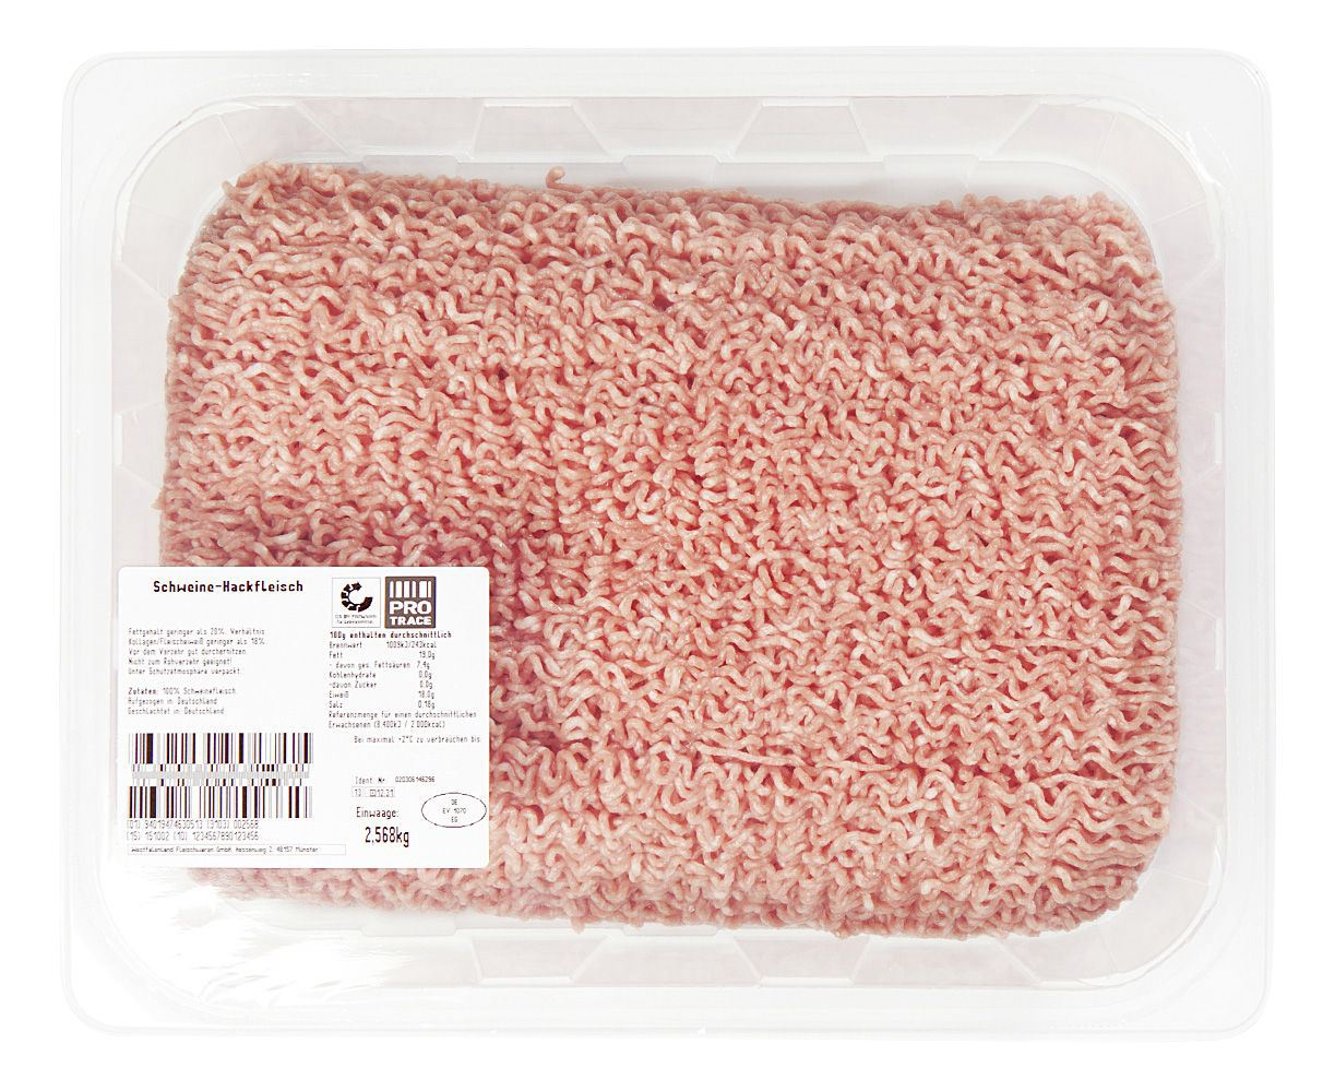 QS Schweinehackfleisch Atmos-verpackt ca. 2,5 kg Packung